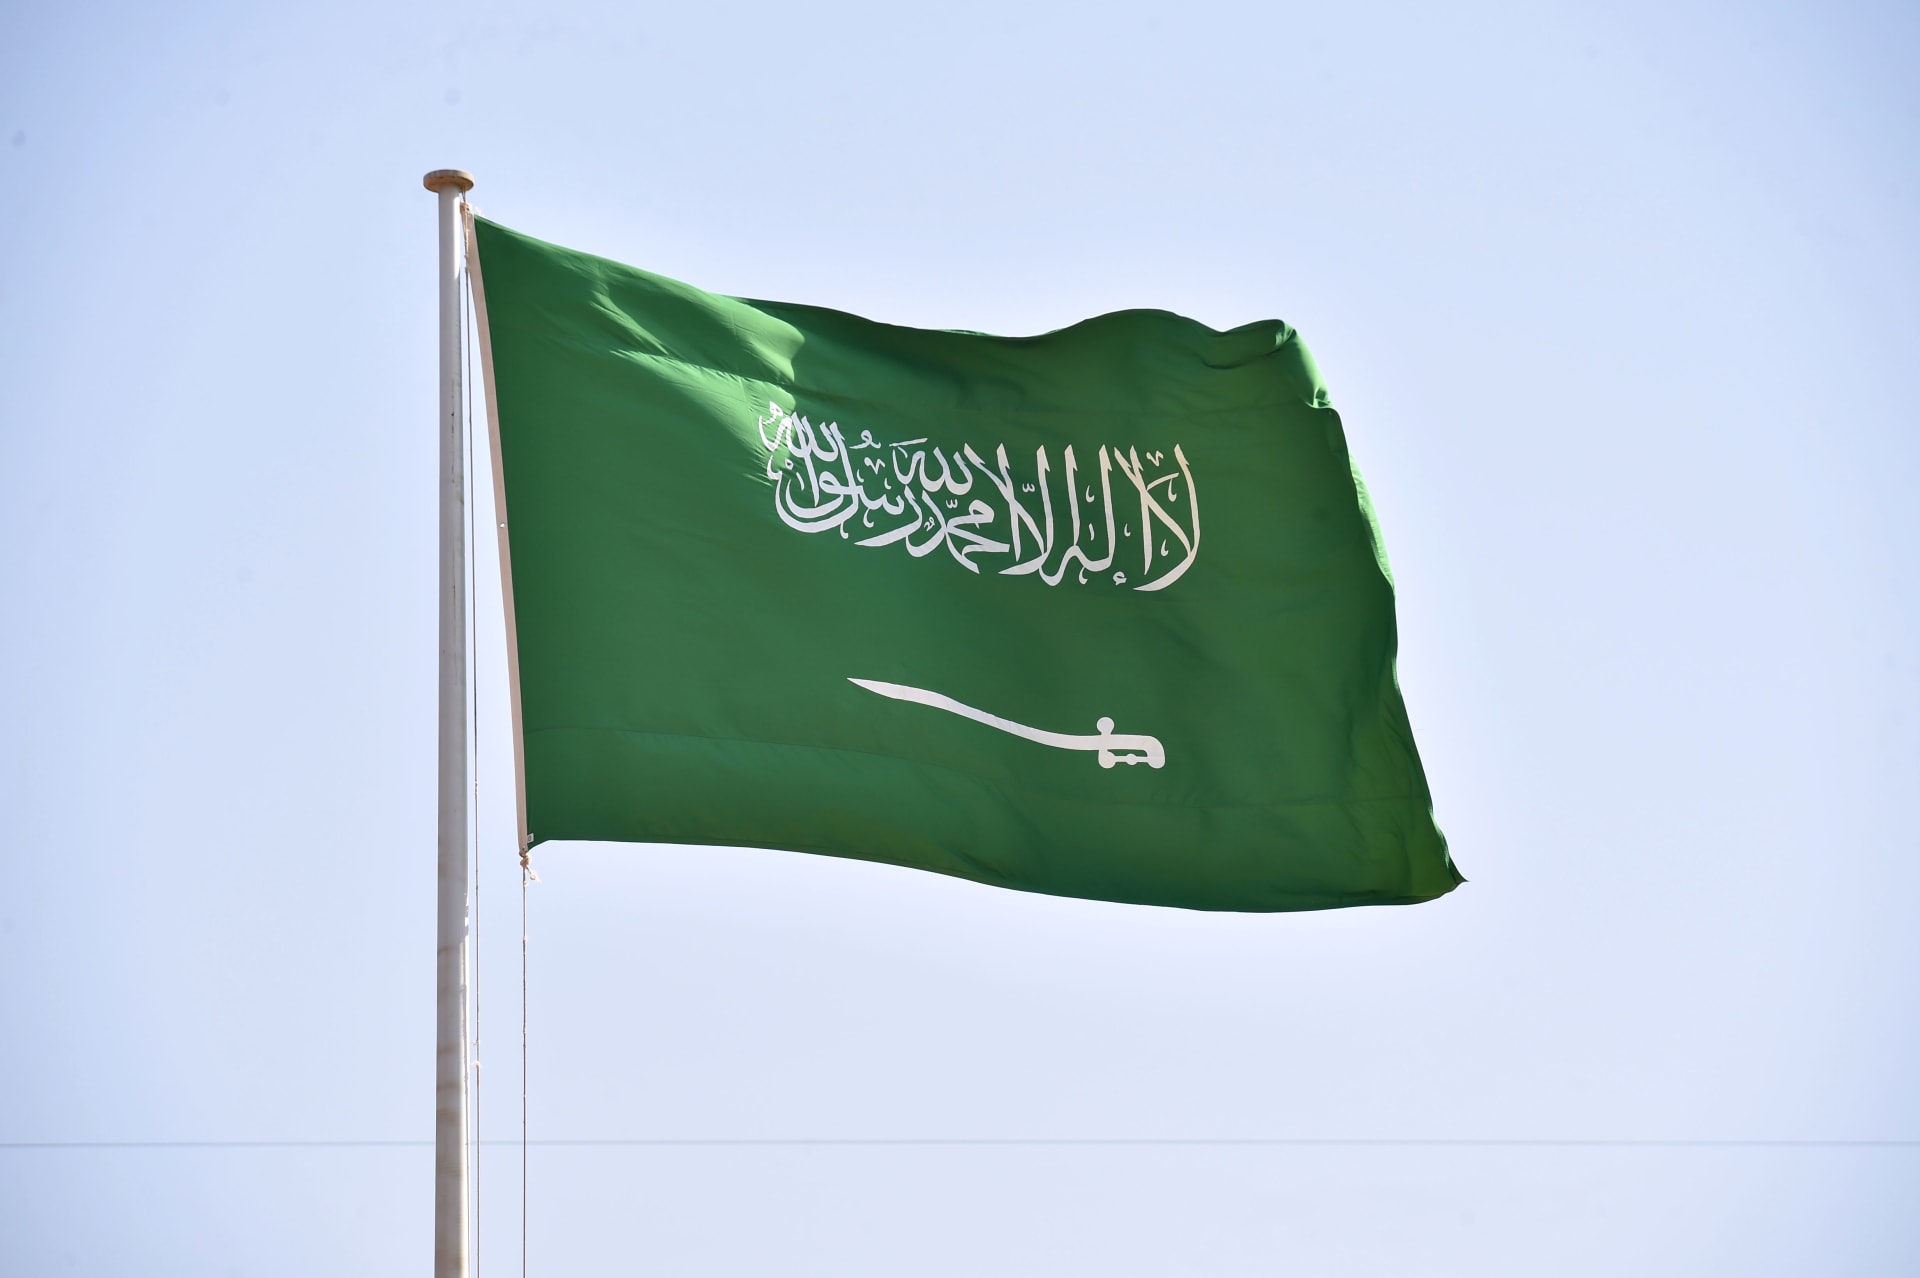 السعودية للكهرباء تعلن عن رقم مجاني للتواصل وتجيب عن إمكانية قطع الخدمة مؤقتًا لحين السداد